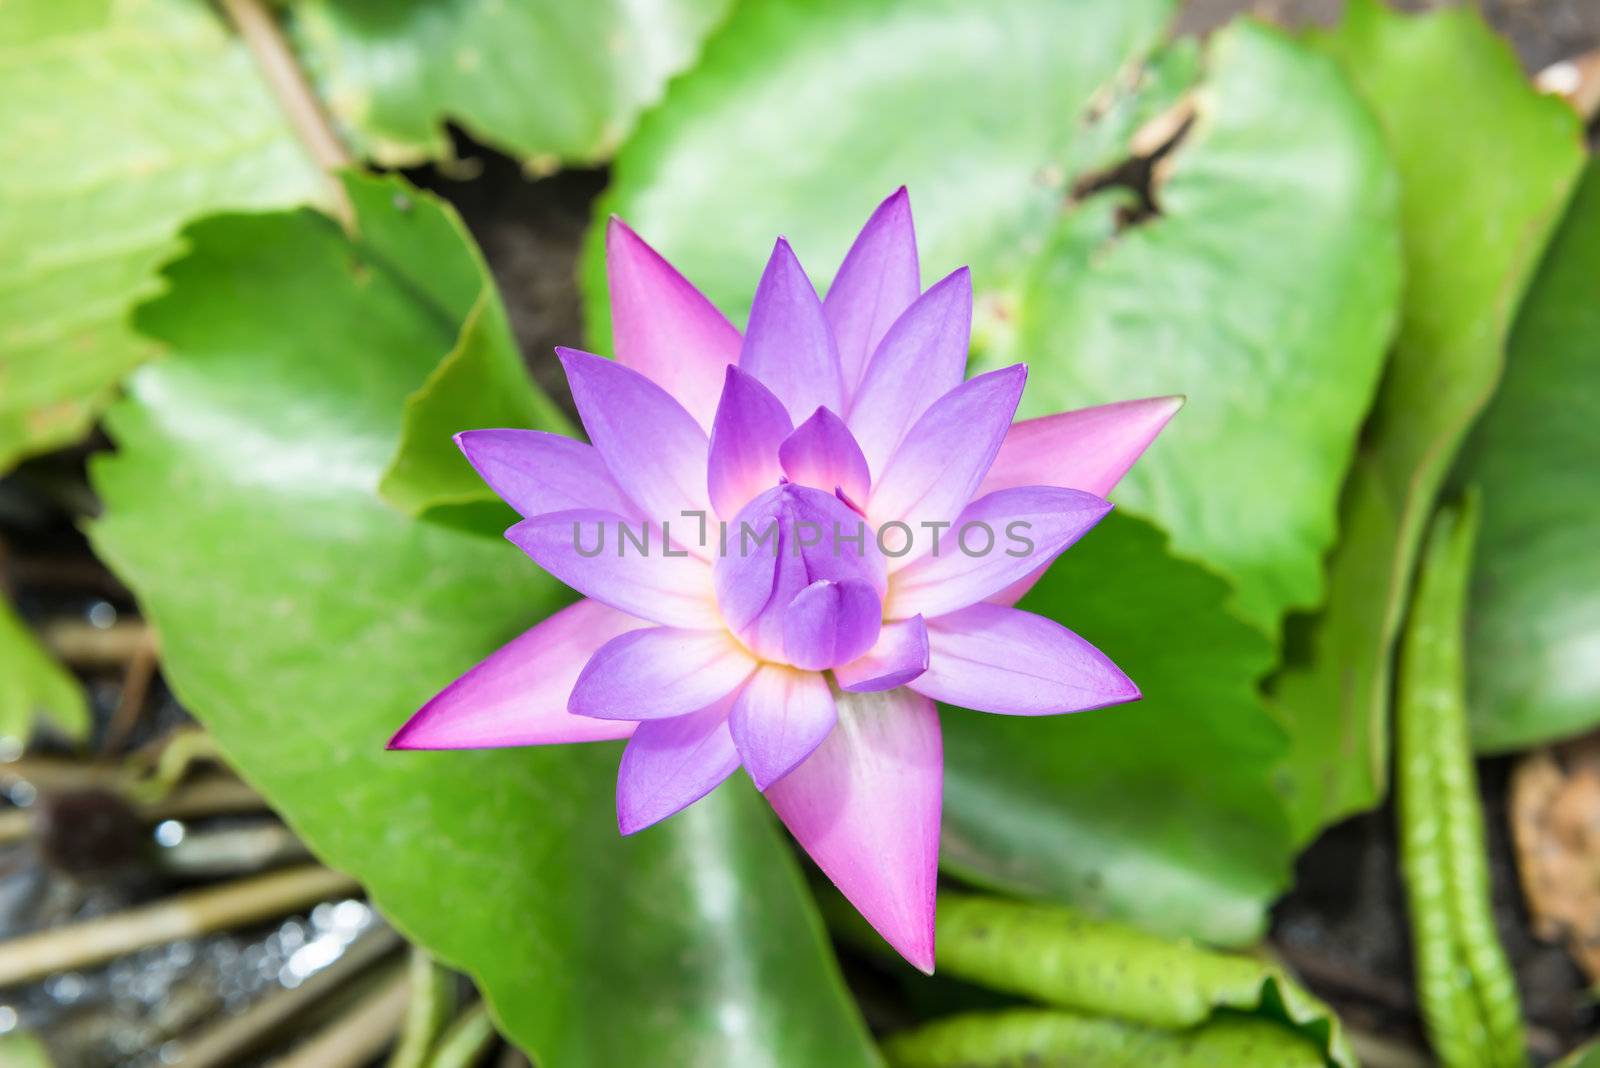 Waterlily or lotus flower at daytime